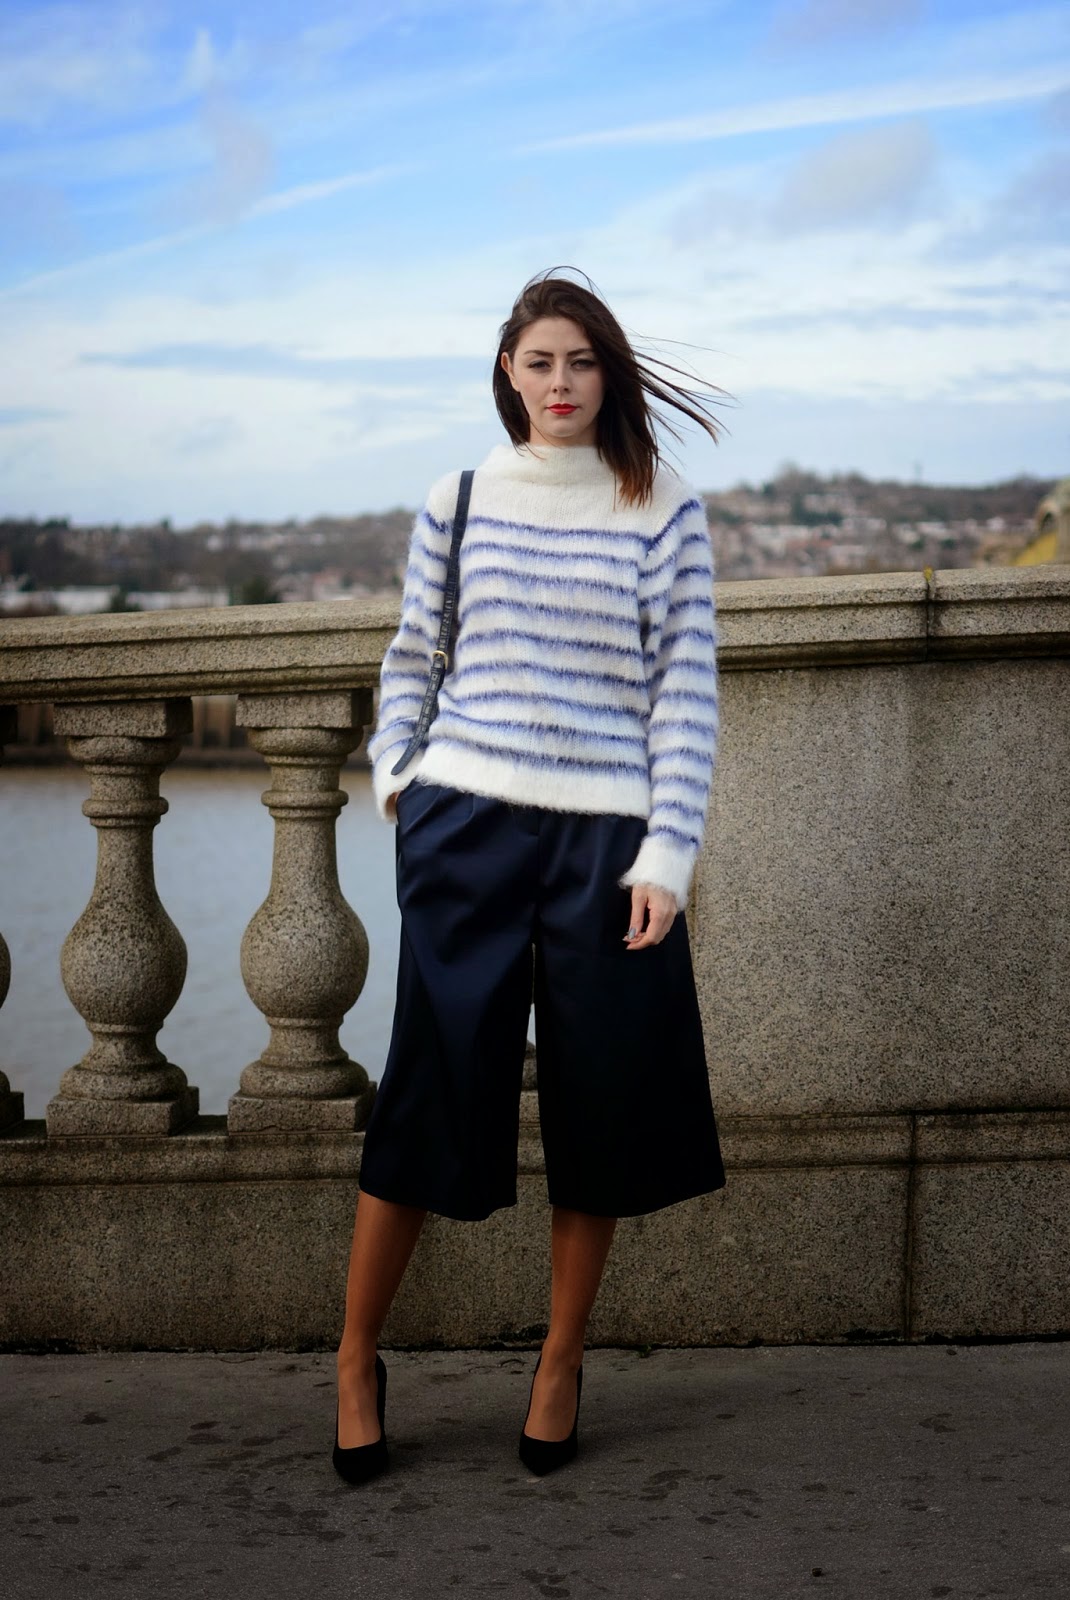 Eniwhere Fashion - Culottes - Maxi cardigan - Trend FW 2014-15